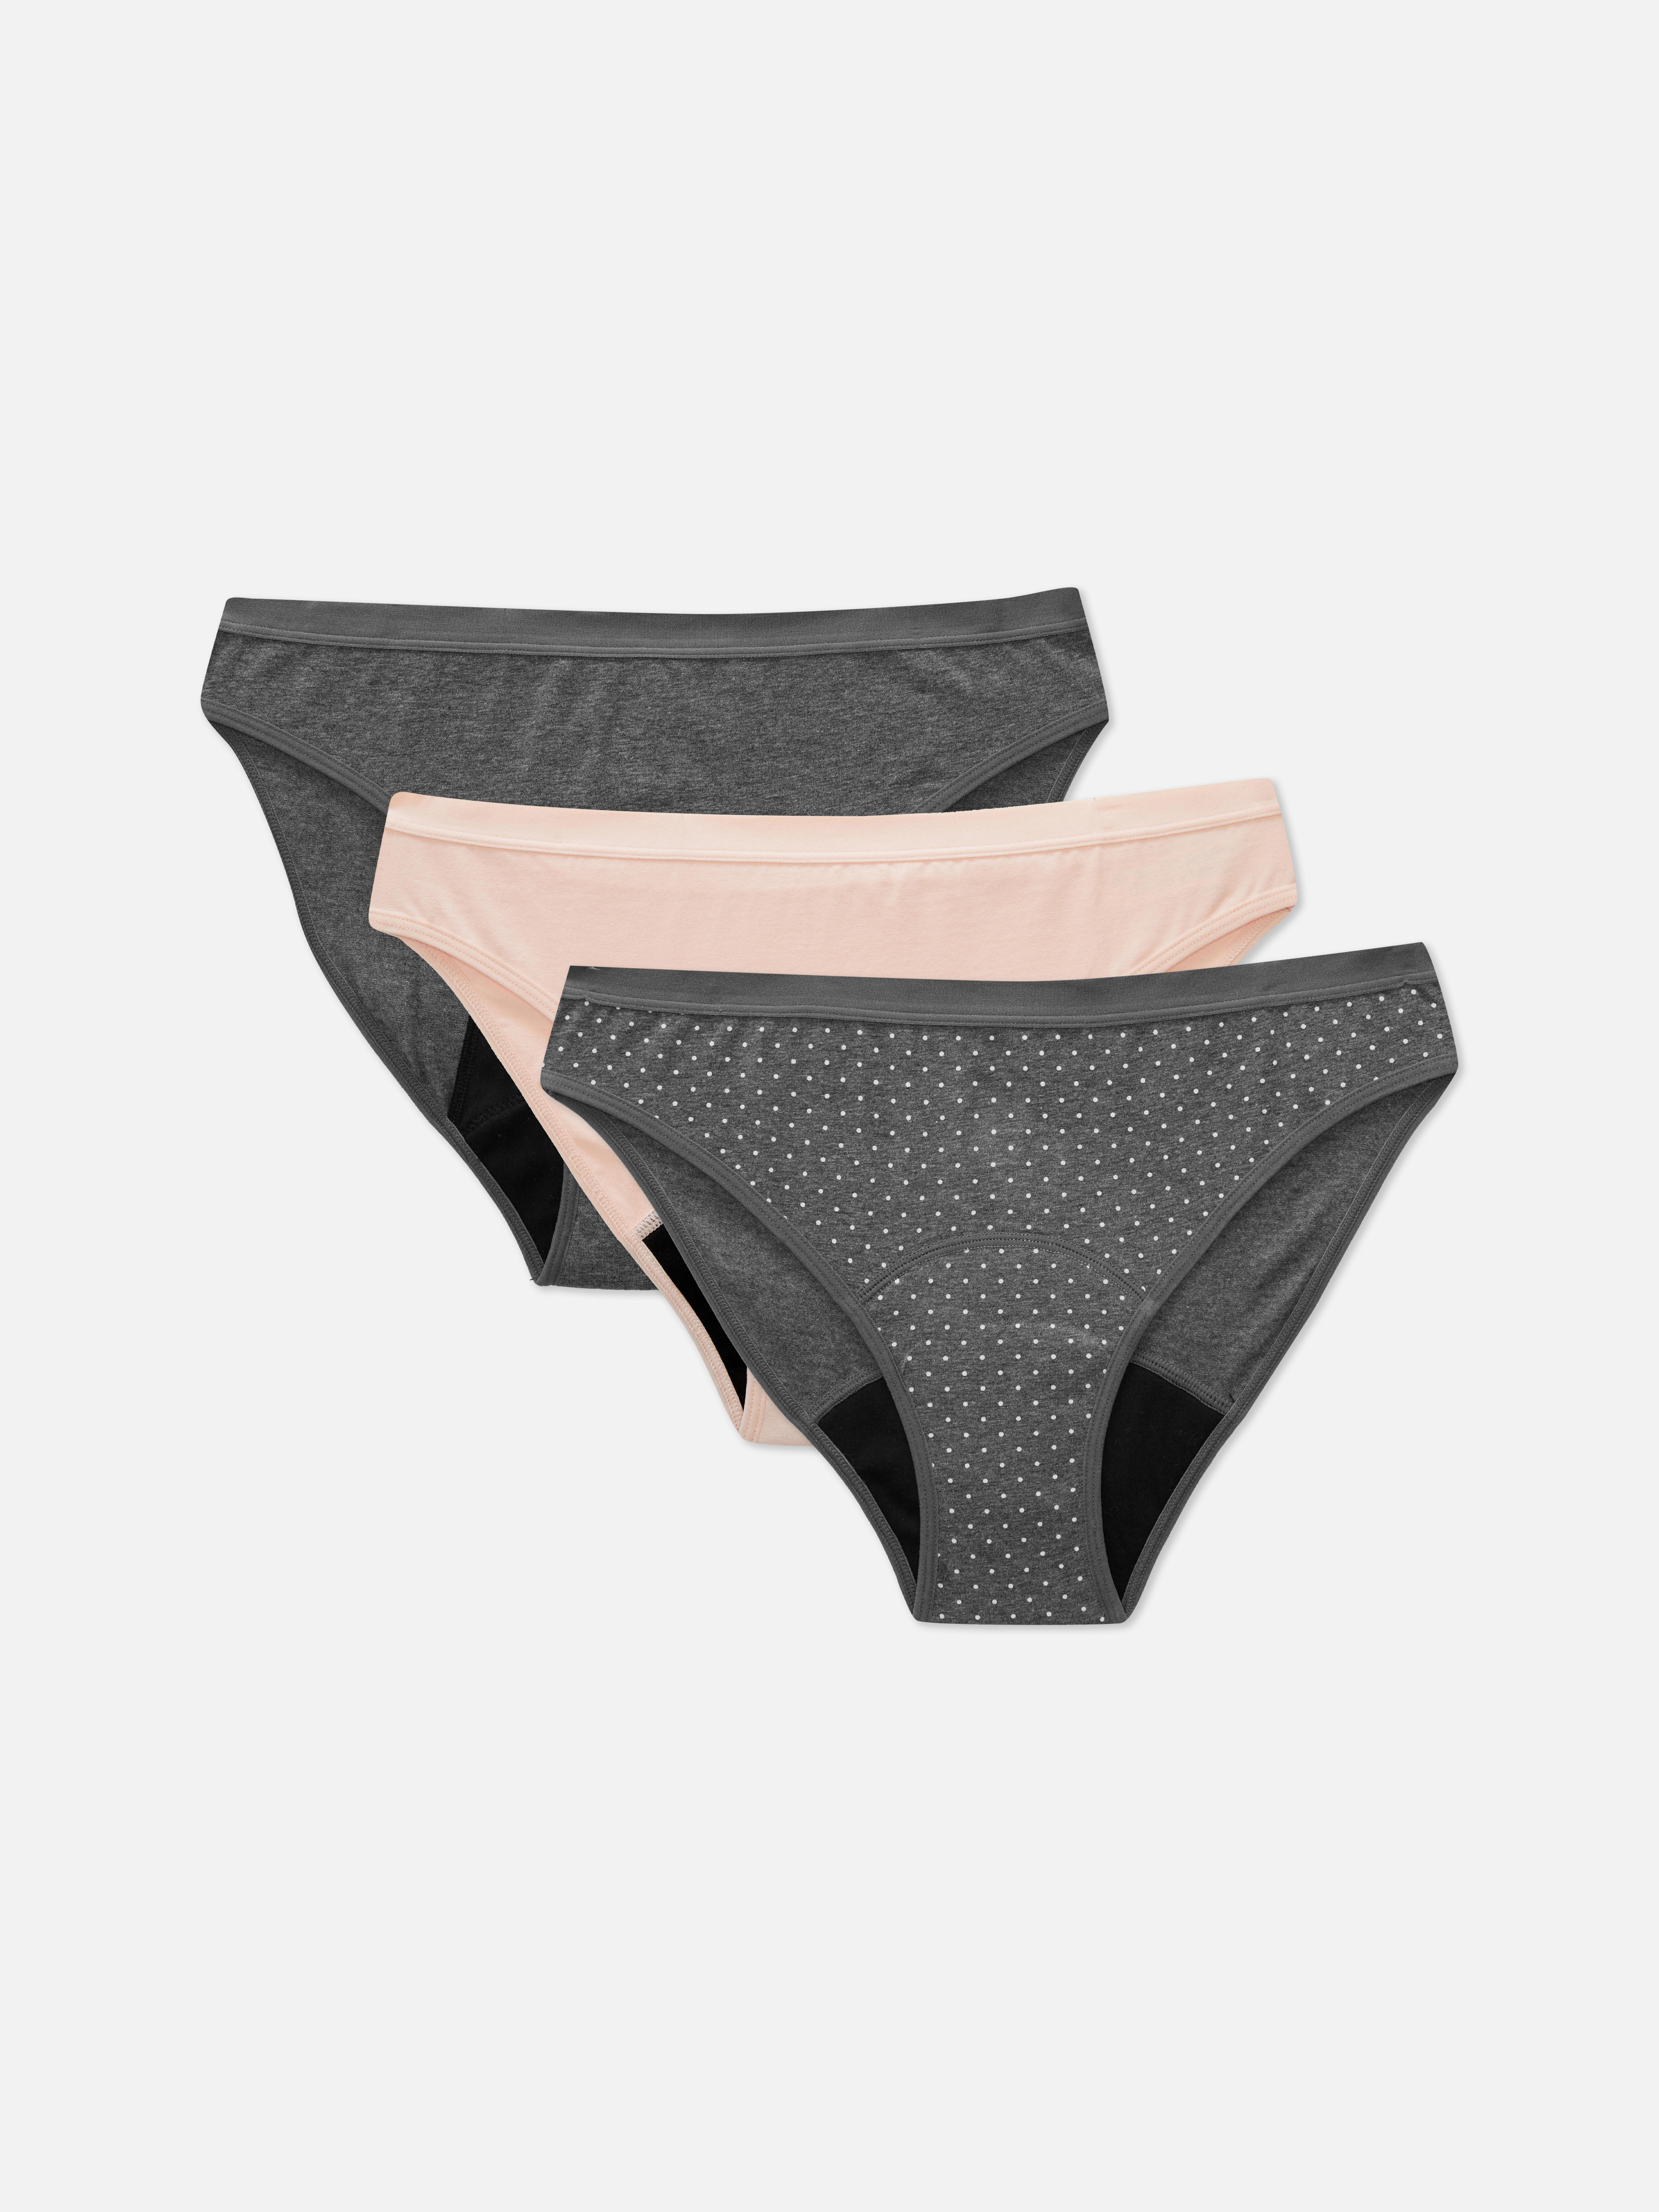 Primark launch new 'Period Underwear' on sale in stores now - U105